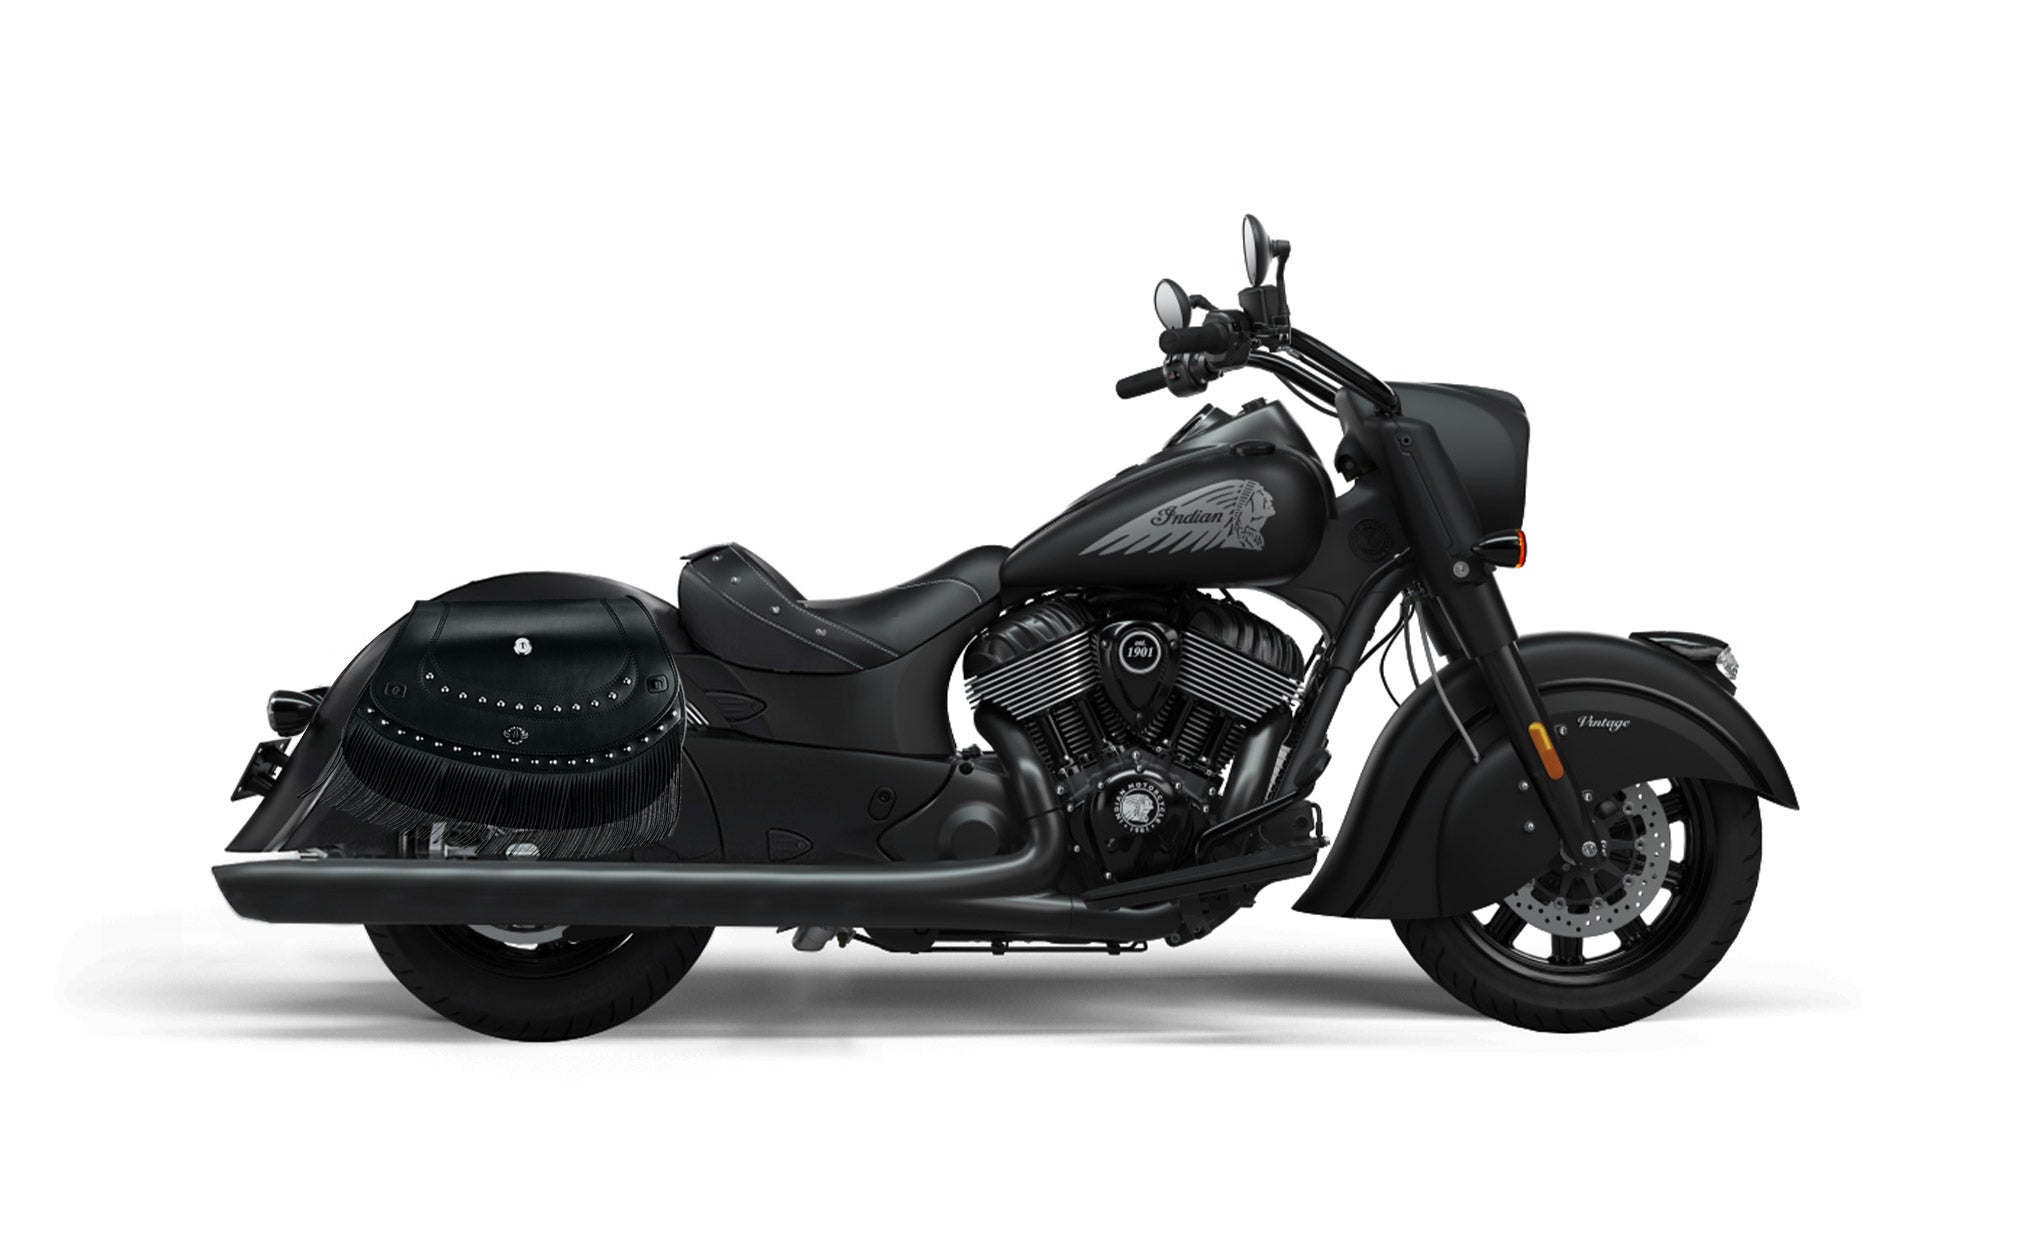 Viking Mohawk Extra Large Indian Vintage Darkhorse Specific Leather Motorcycle Saddlebags on Bike Photo @expand